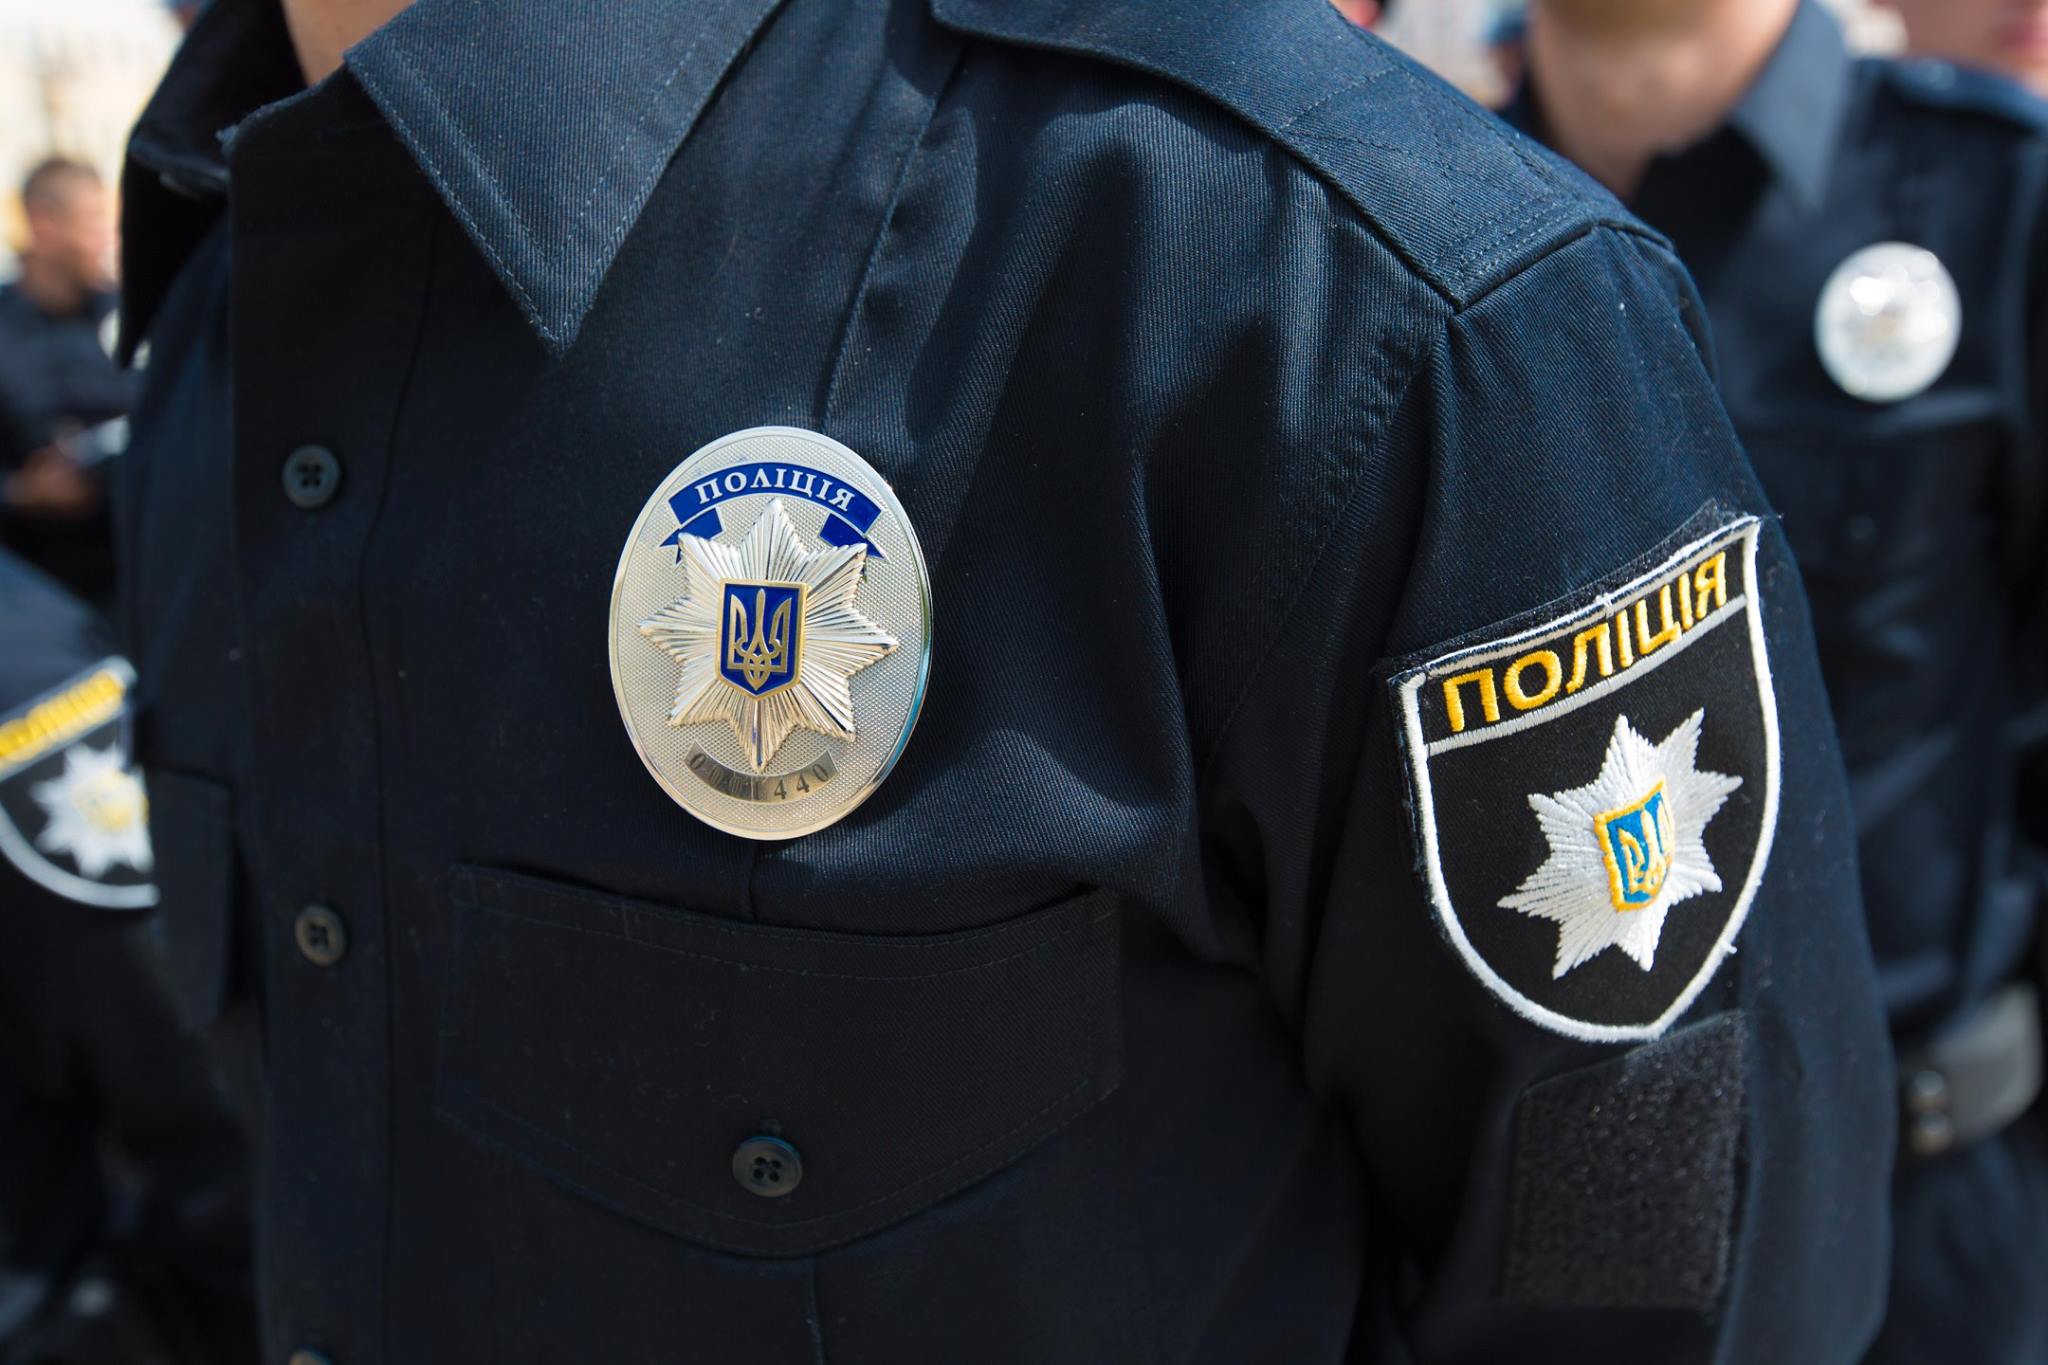 Полиция: В Киеве в лицо нардепу распылили слезоточивый газ